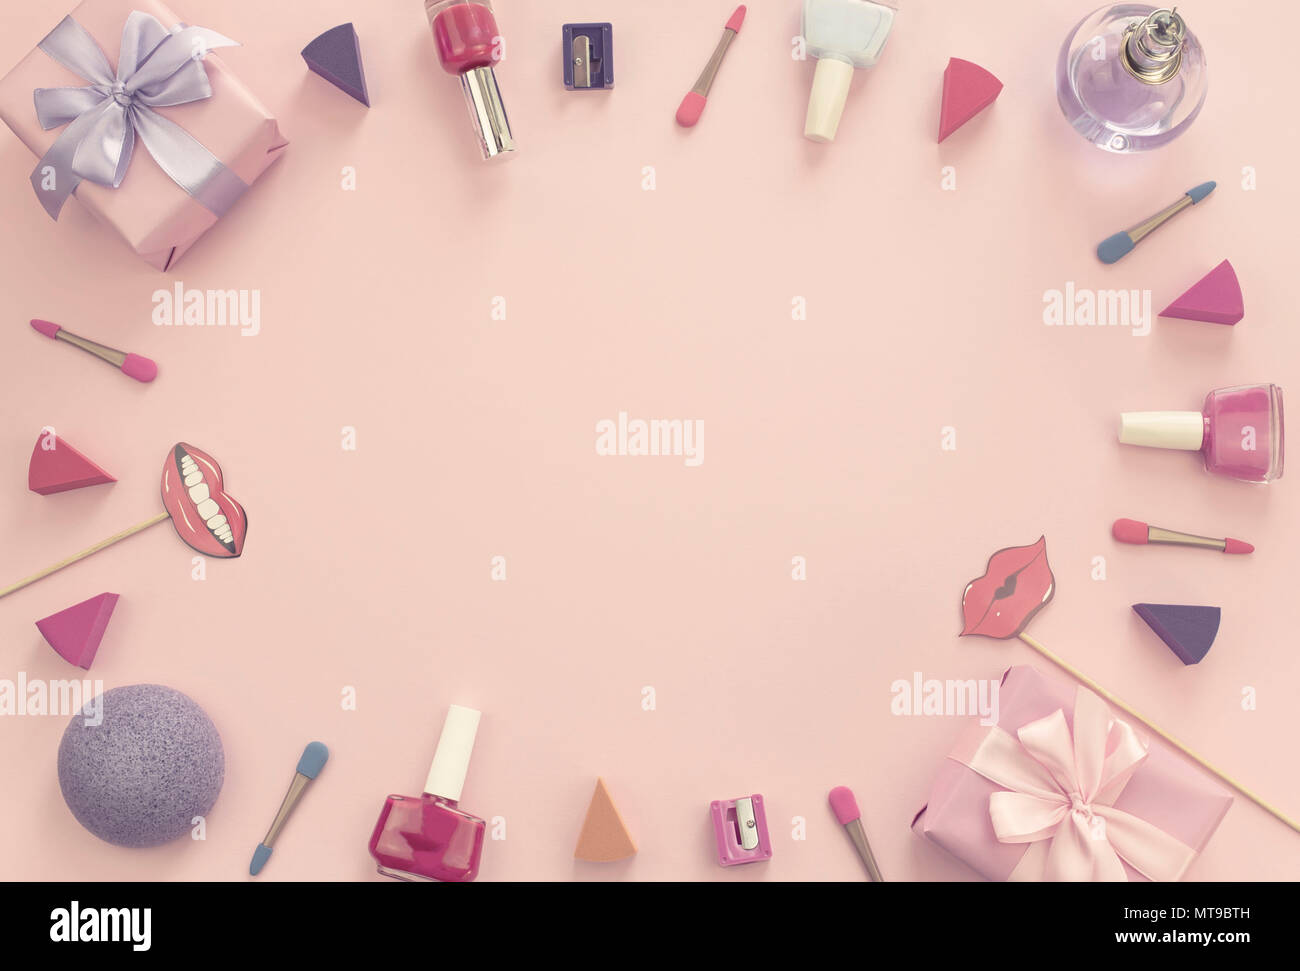 Zusammensetzung der dekorativen Kosmetik Nagellack Lippenstift schwamm  Spitzer box Geschenkbänder satin schleife Hintergrund rosa. Ansicht von  oben flach Stockfotografie - Alamy